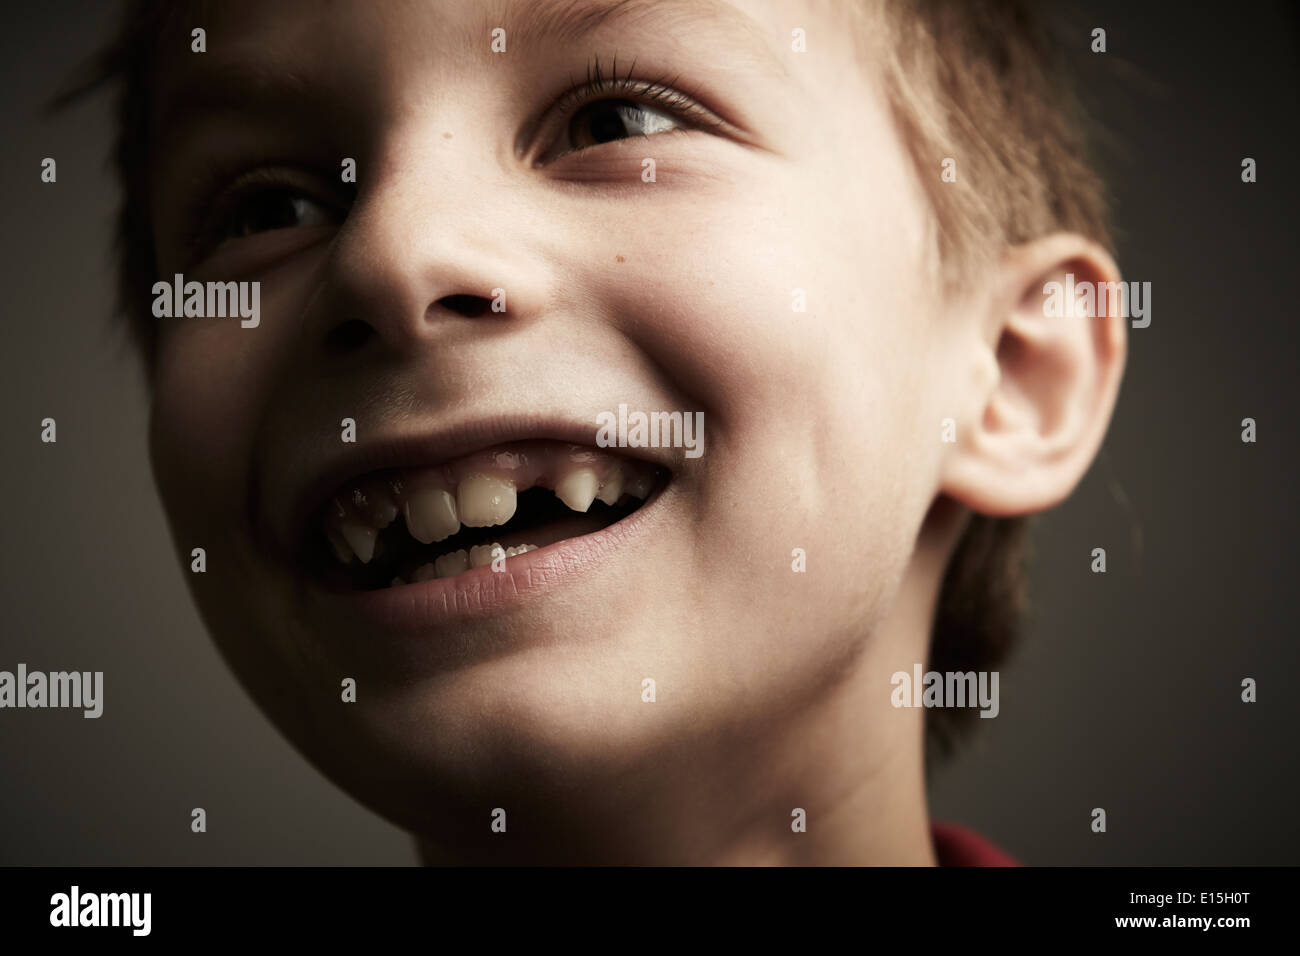 Junge lächelnd mit Zahnlücke Stockfoto